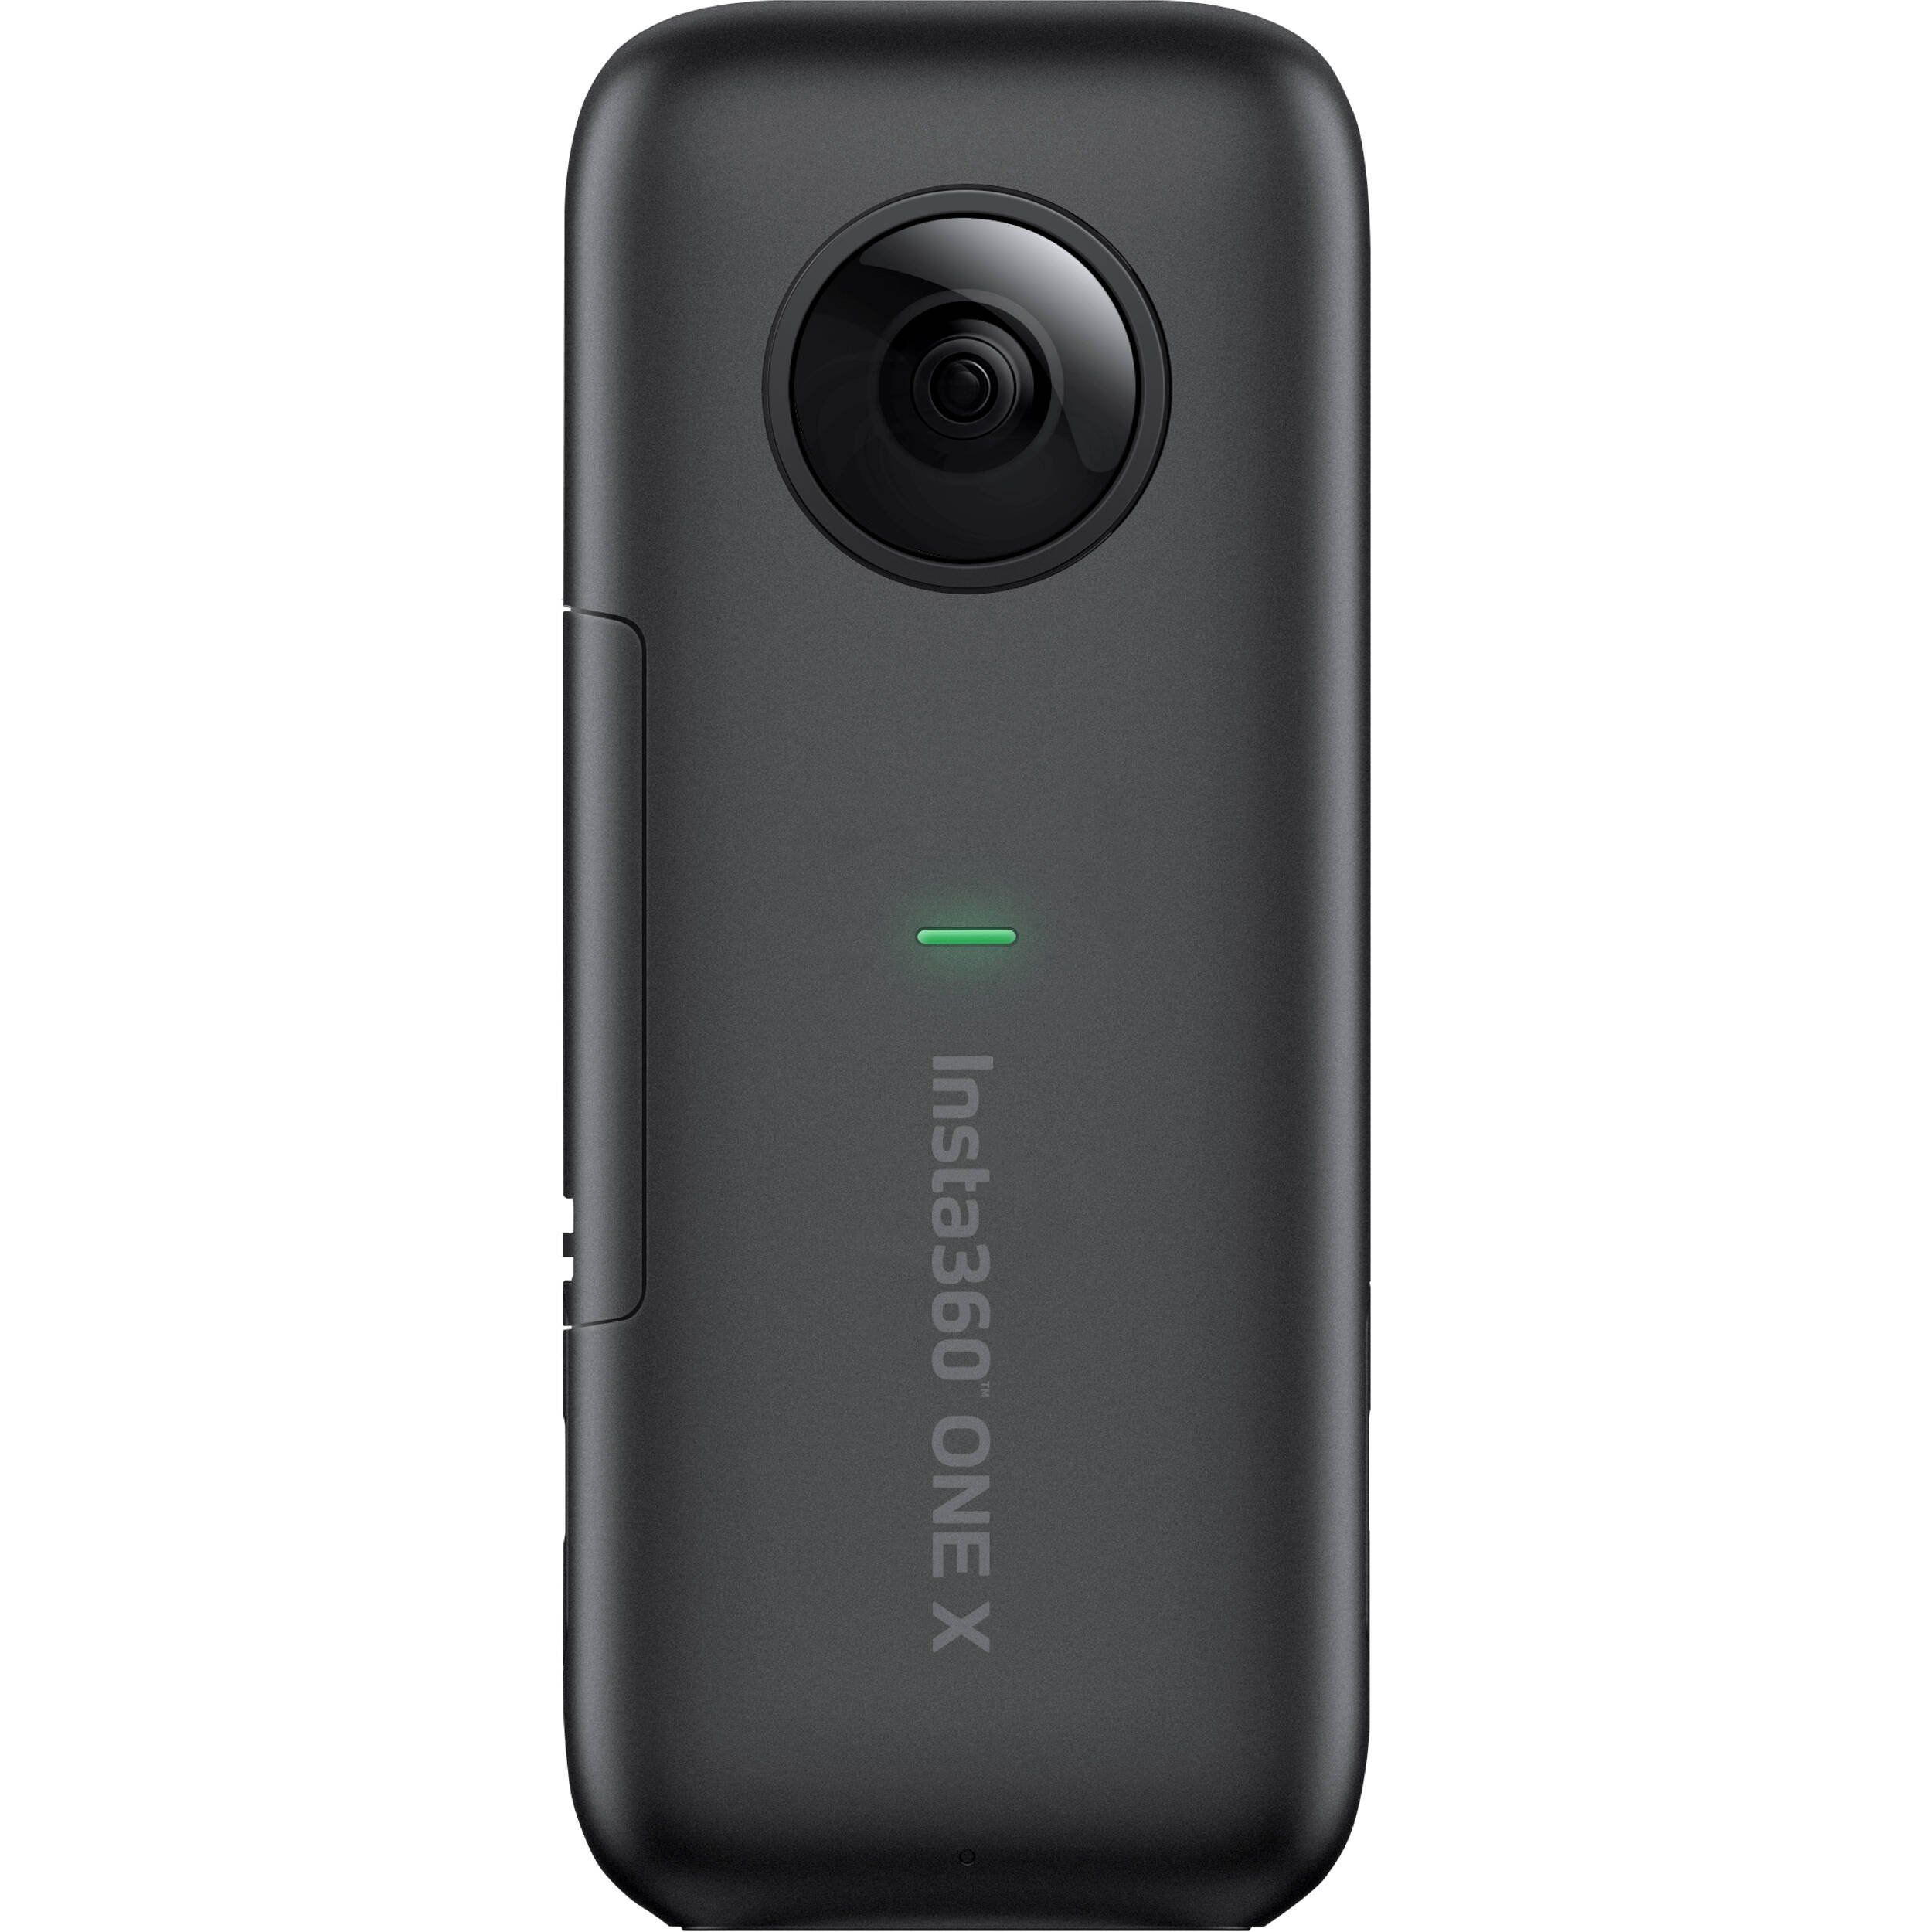 Insta360 ONE X là camera 360 độ nổi bật mà bạn nên sở hữ